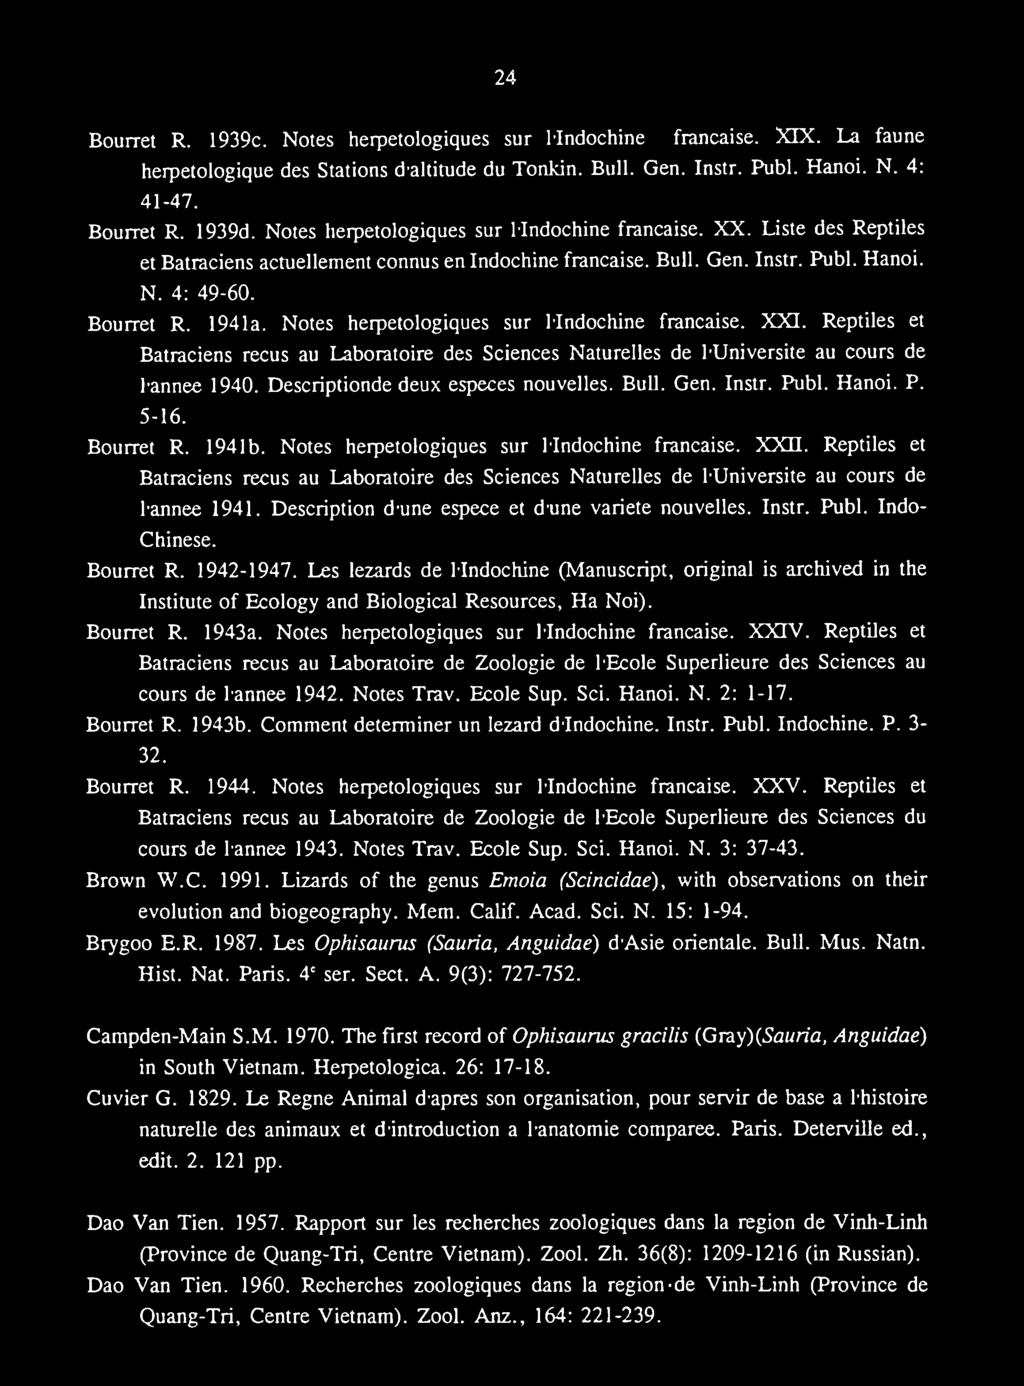 Reptiles et Batraciens recus au Laboratoire des Sciences Naturelles de luniversite au cours de lannee 1941. Description dune espece et dune variete nouvelles. Instr. Publ. Indo- Chinese. Bourret R.